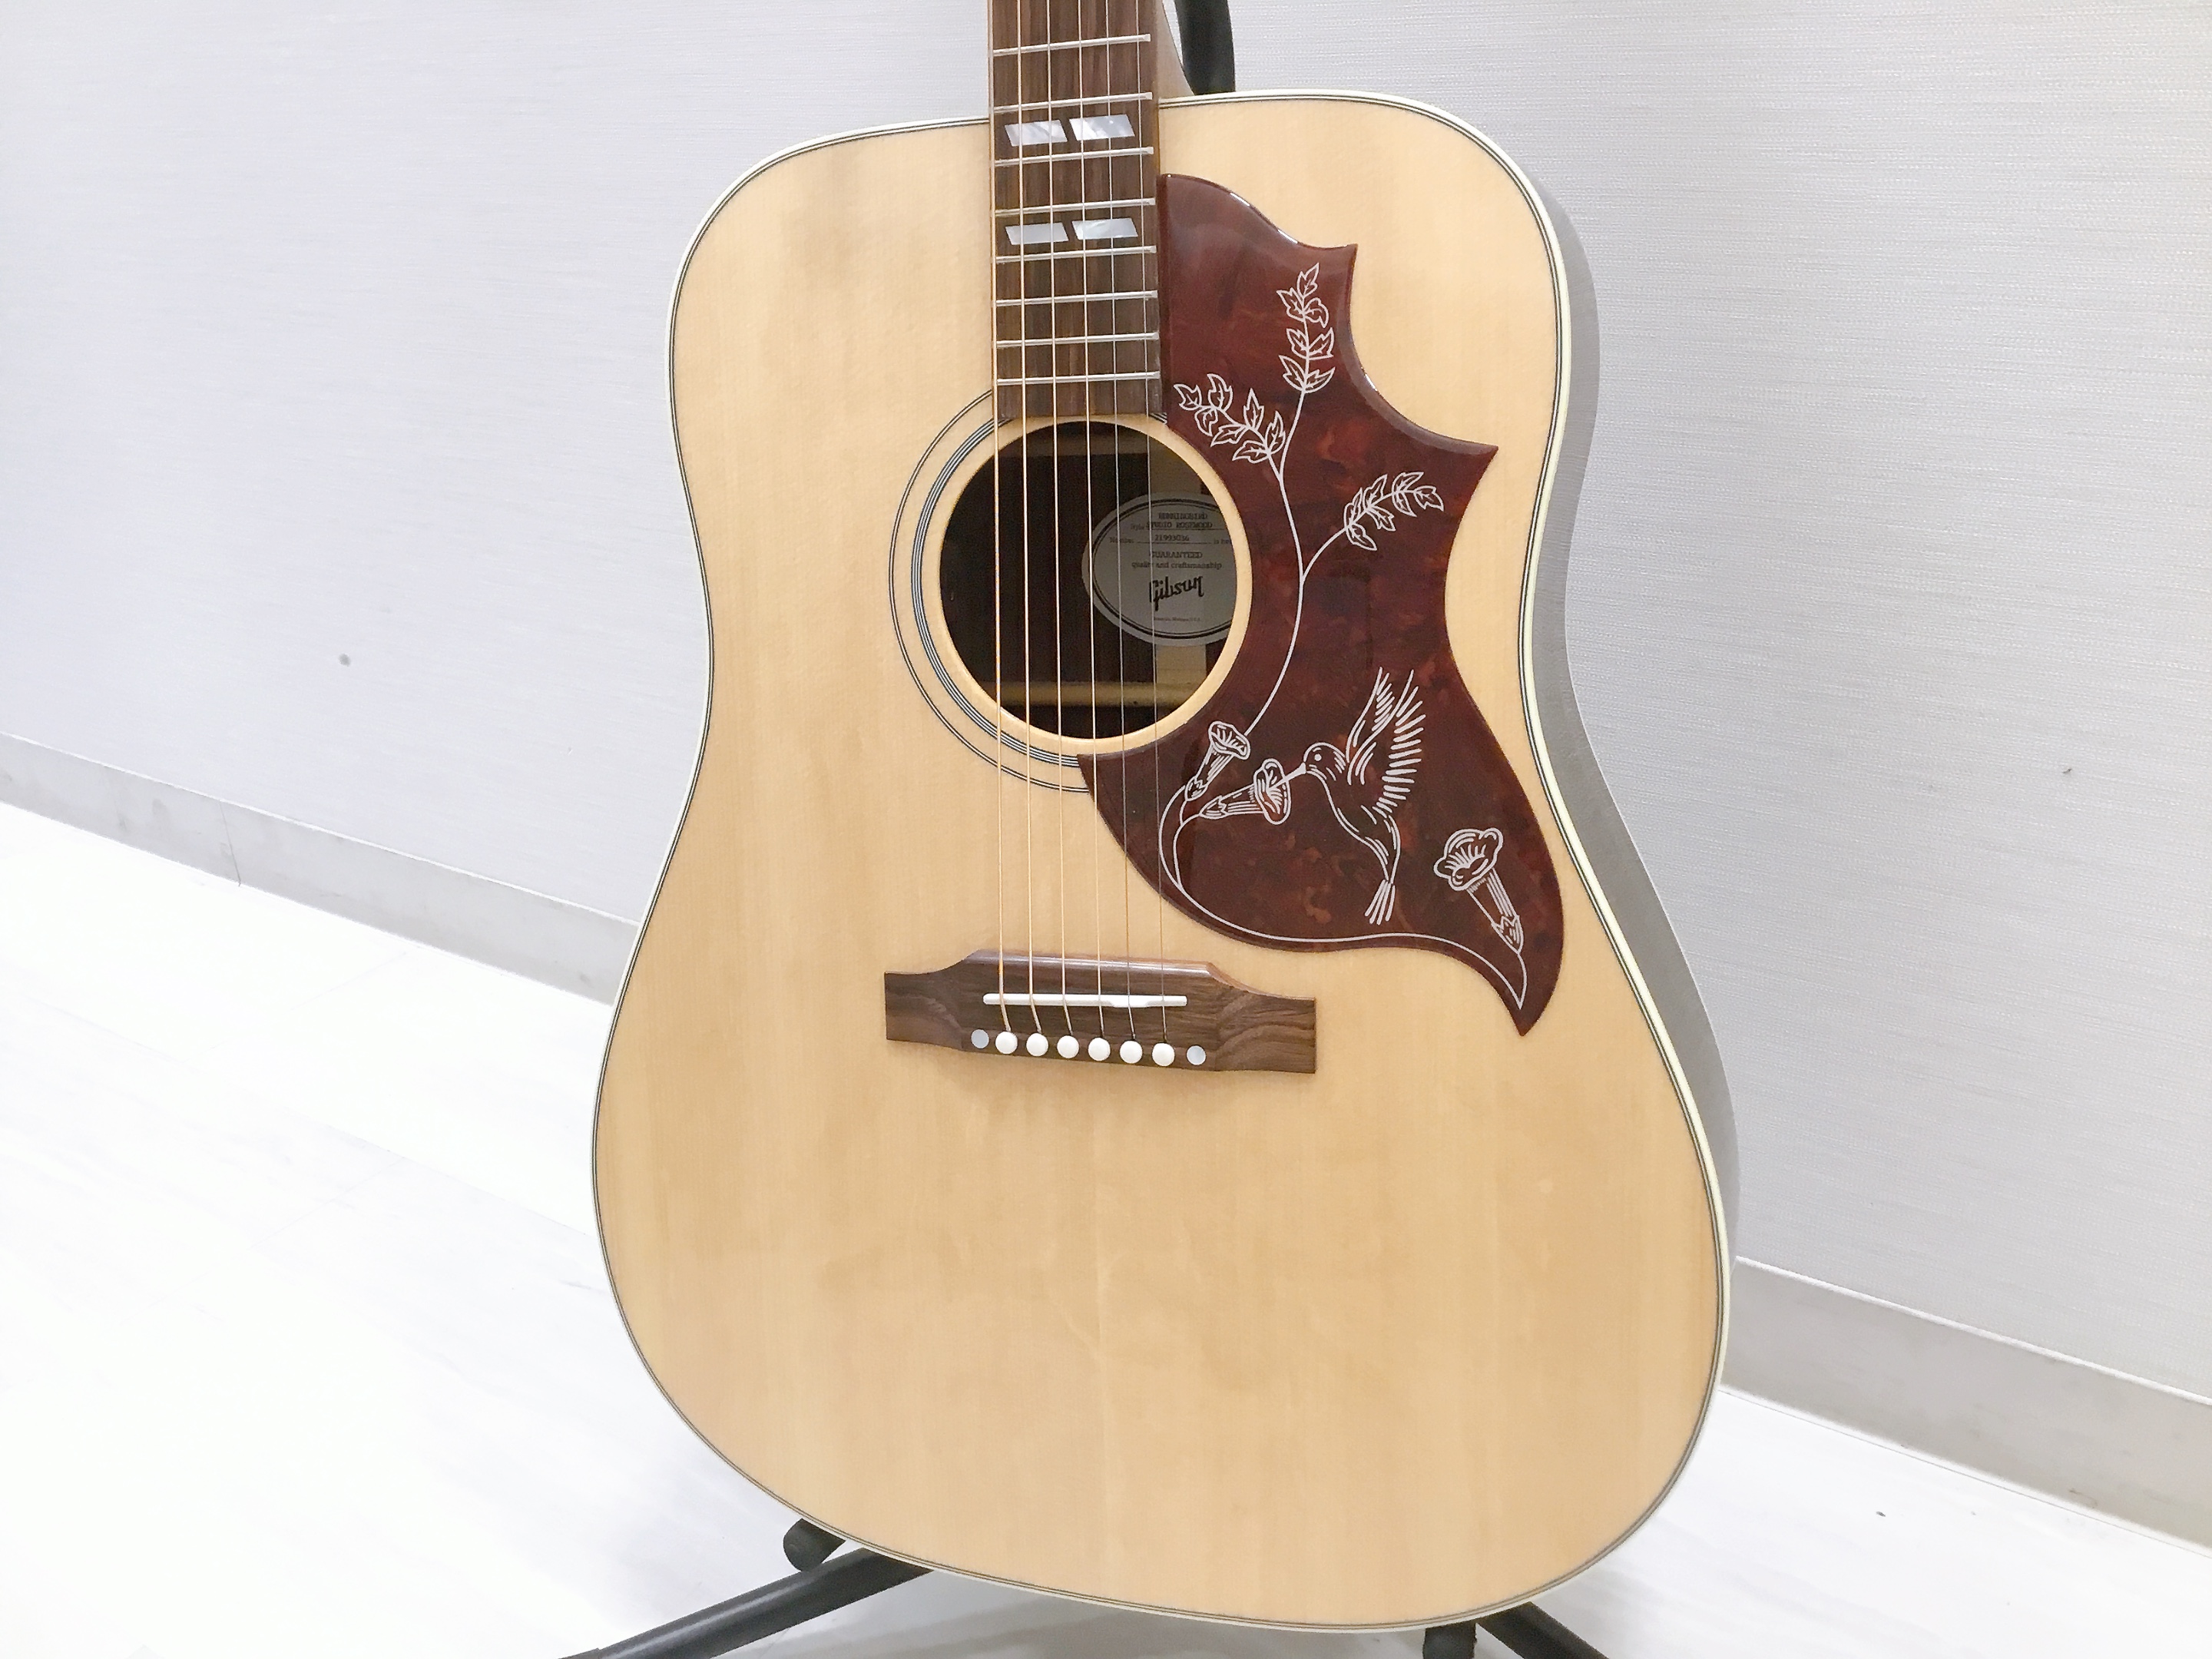 島村楽器大分店に、Gibson(ギブソン)のアコースティックギター、『Hummingbird Studio Rosewood』が入荷致しました！ Hummingbird Studioは、ハミングバード・ダヴ・ソングライターモデルといった世界的に愛され続けるスクエアショルダー・ボディデザインの歴史的系 […]